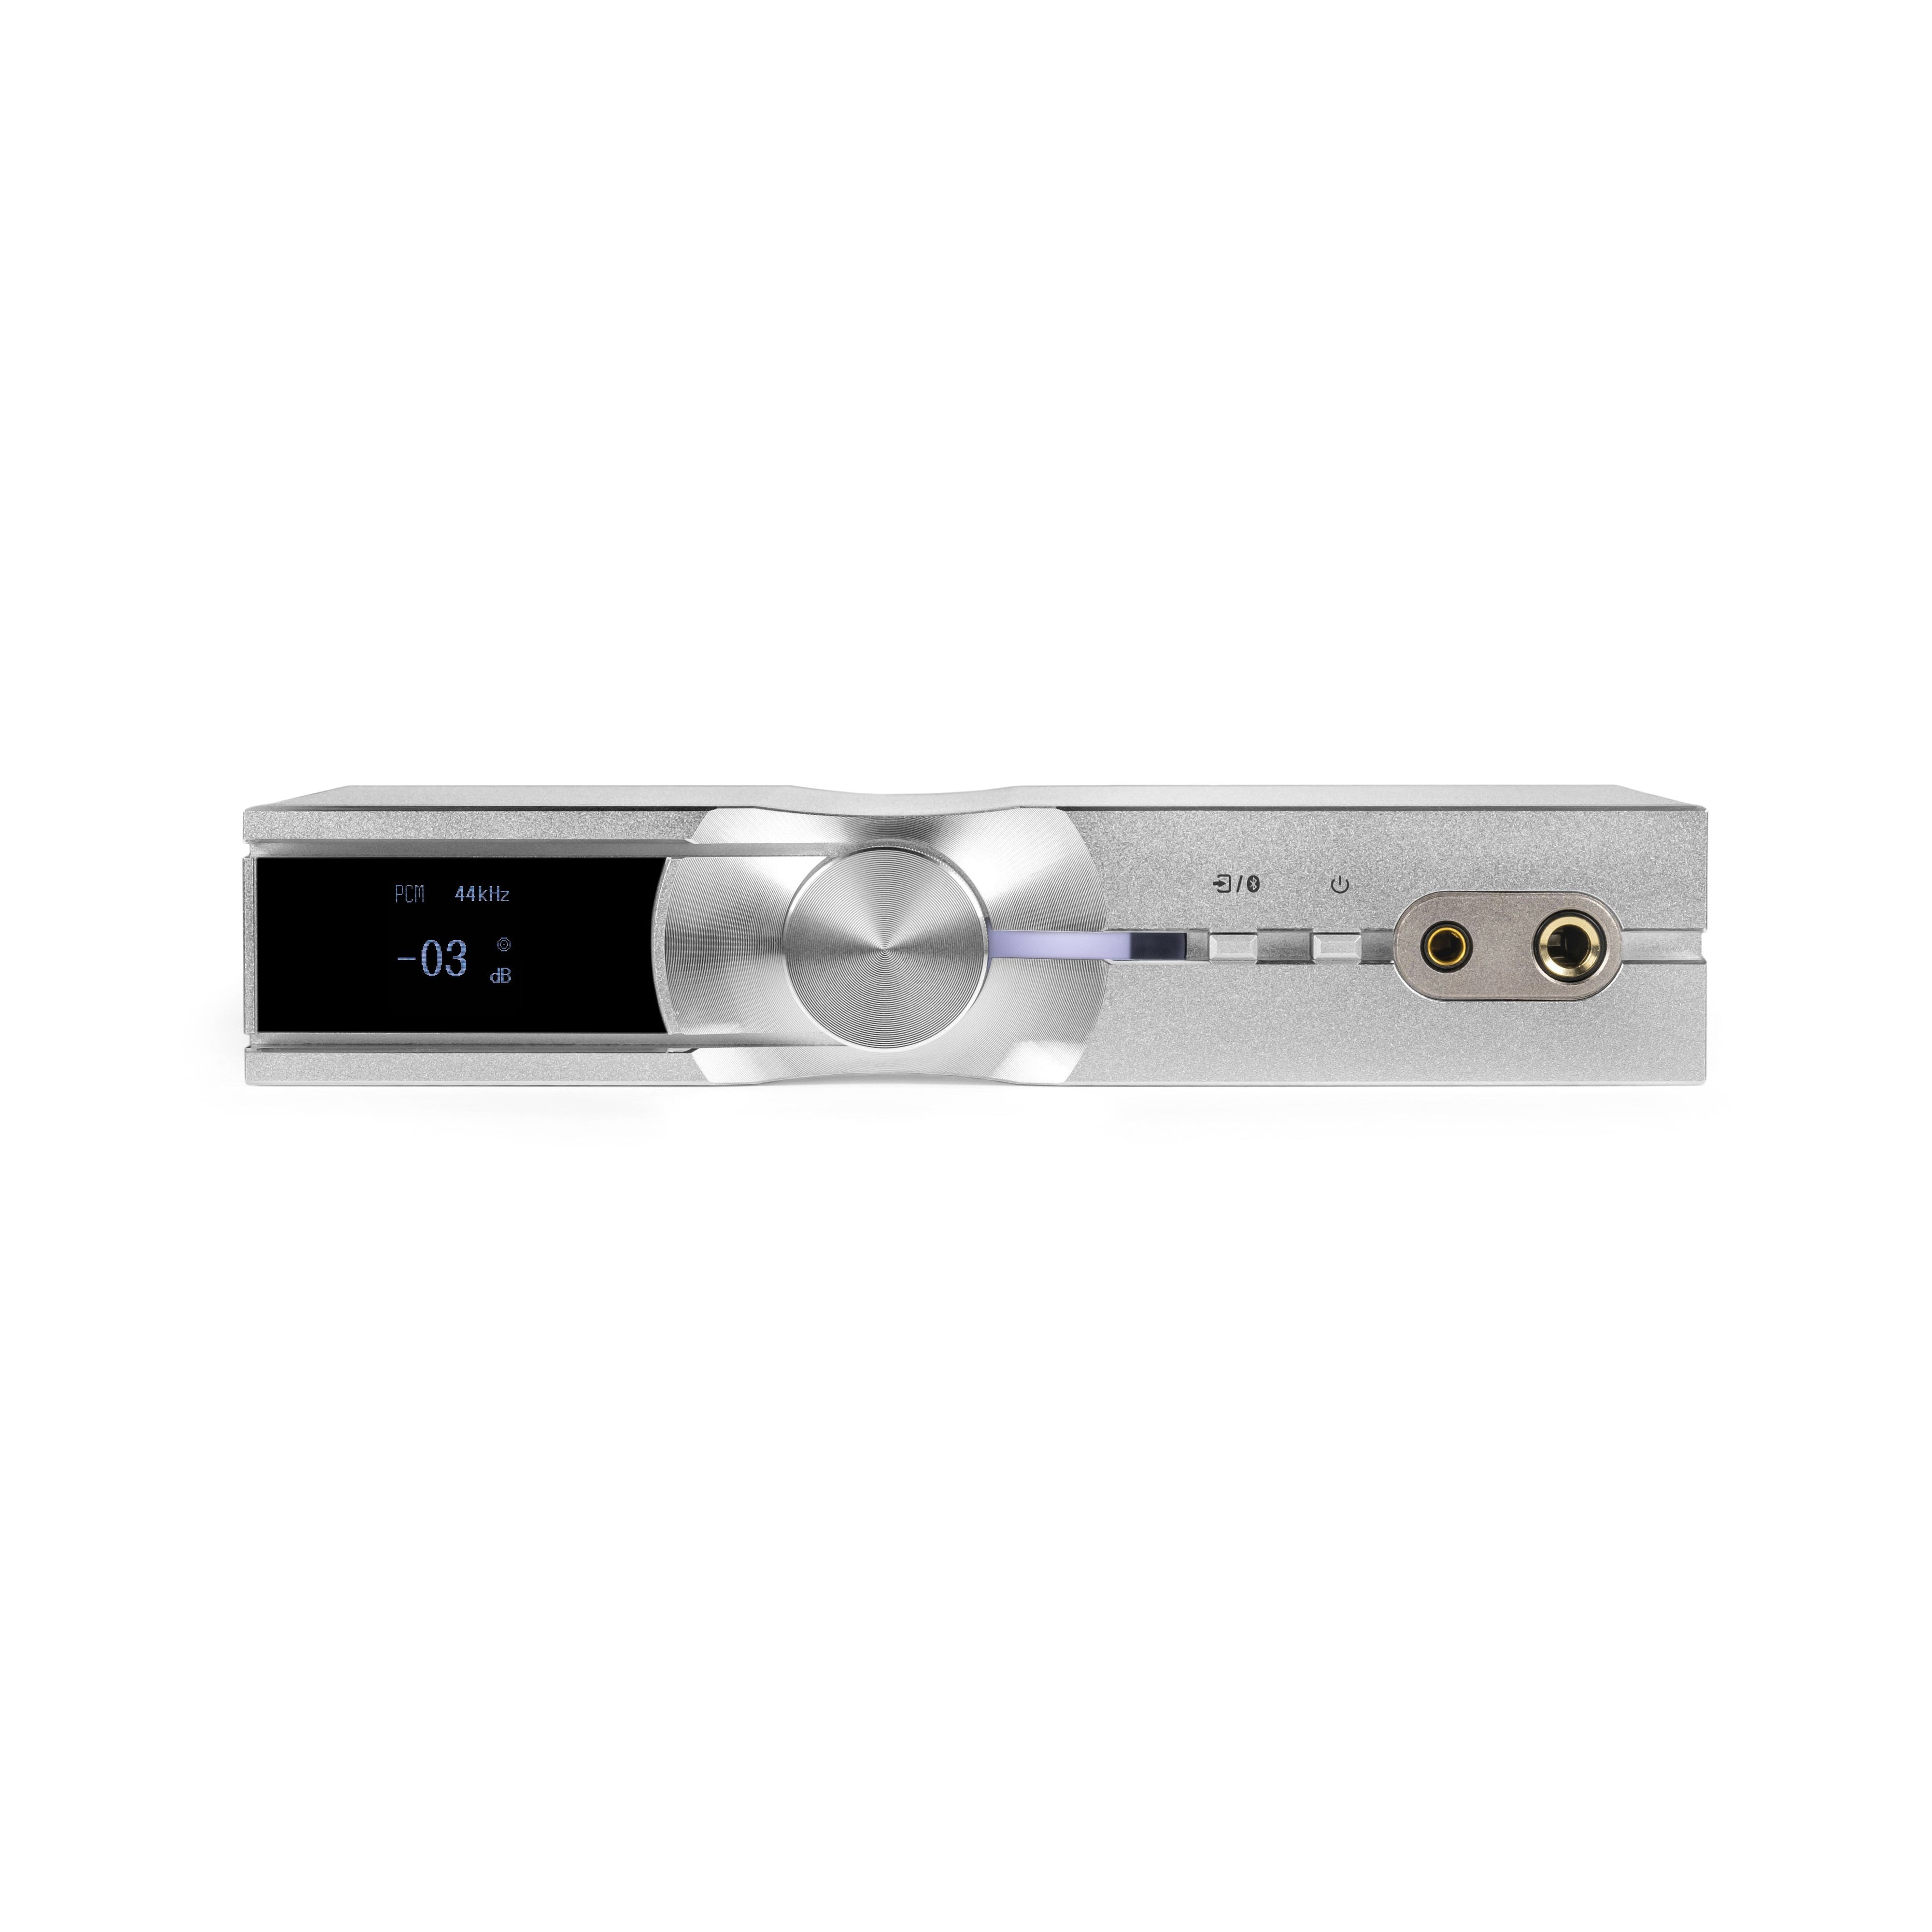 特価窓口iFi audio NEO iDSD + iPower Elite 5V バンドルセット 美品 2021年12月購入 保証期間残あり 外箱・付属品あり ヘッドフォンアンプ